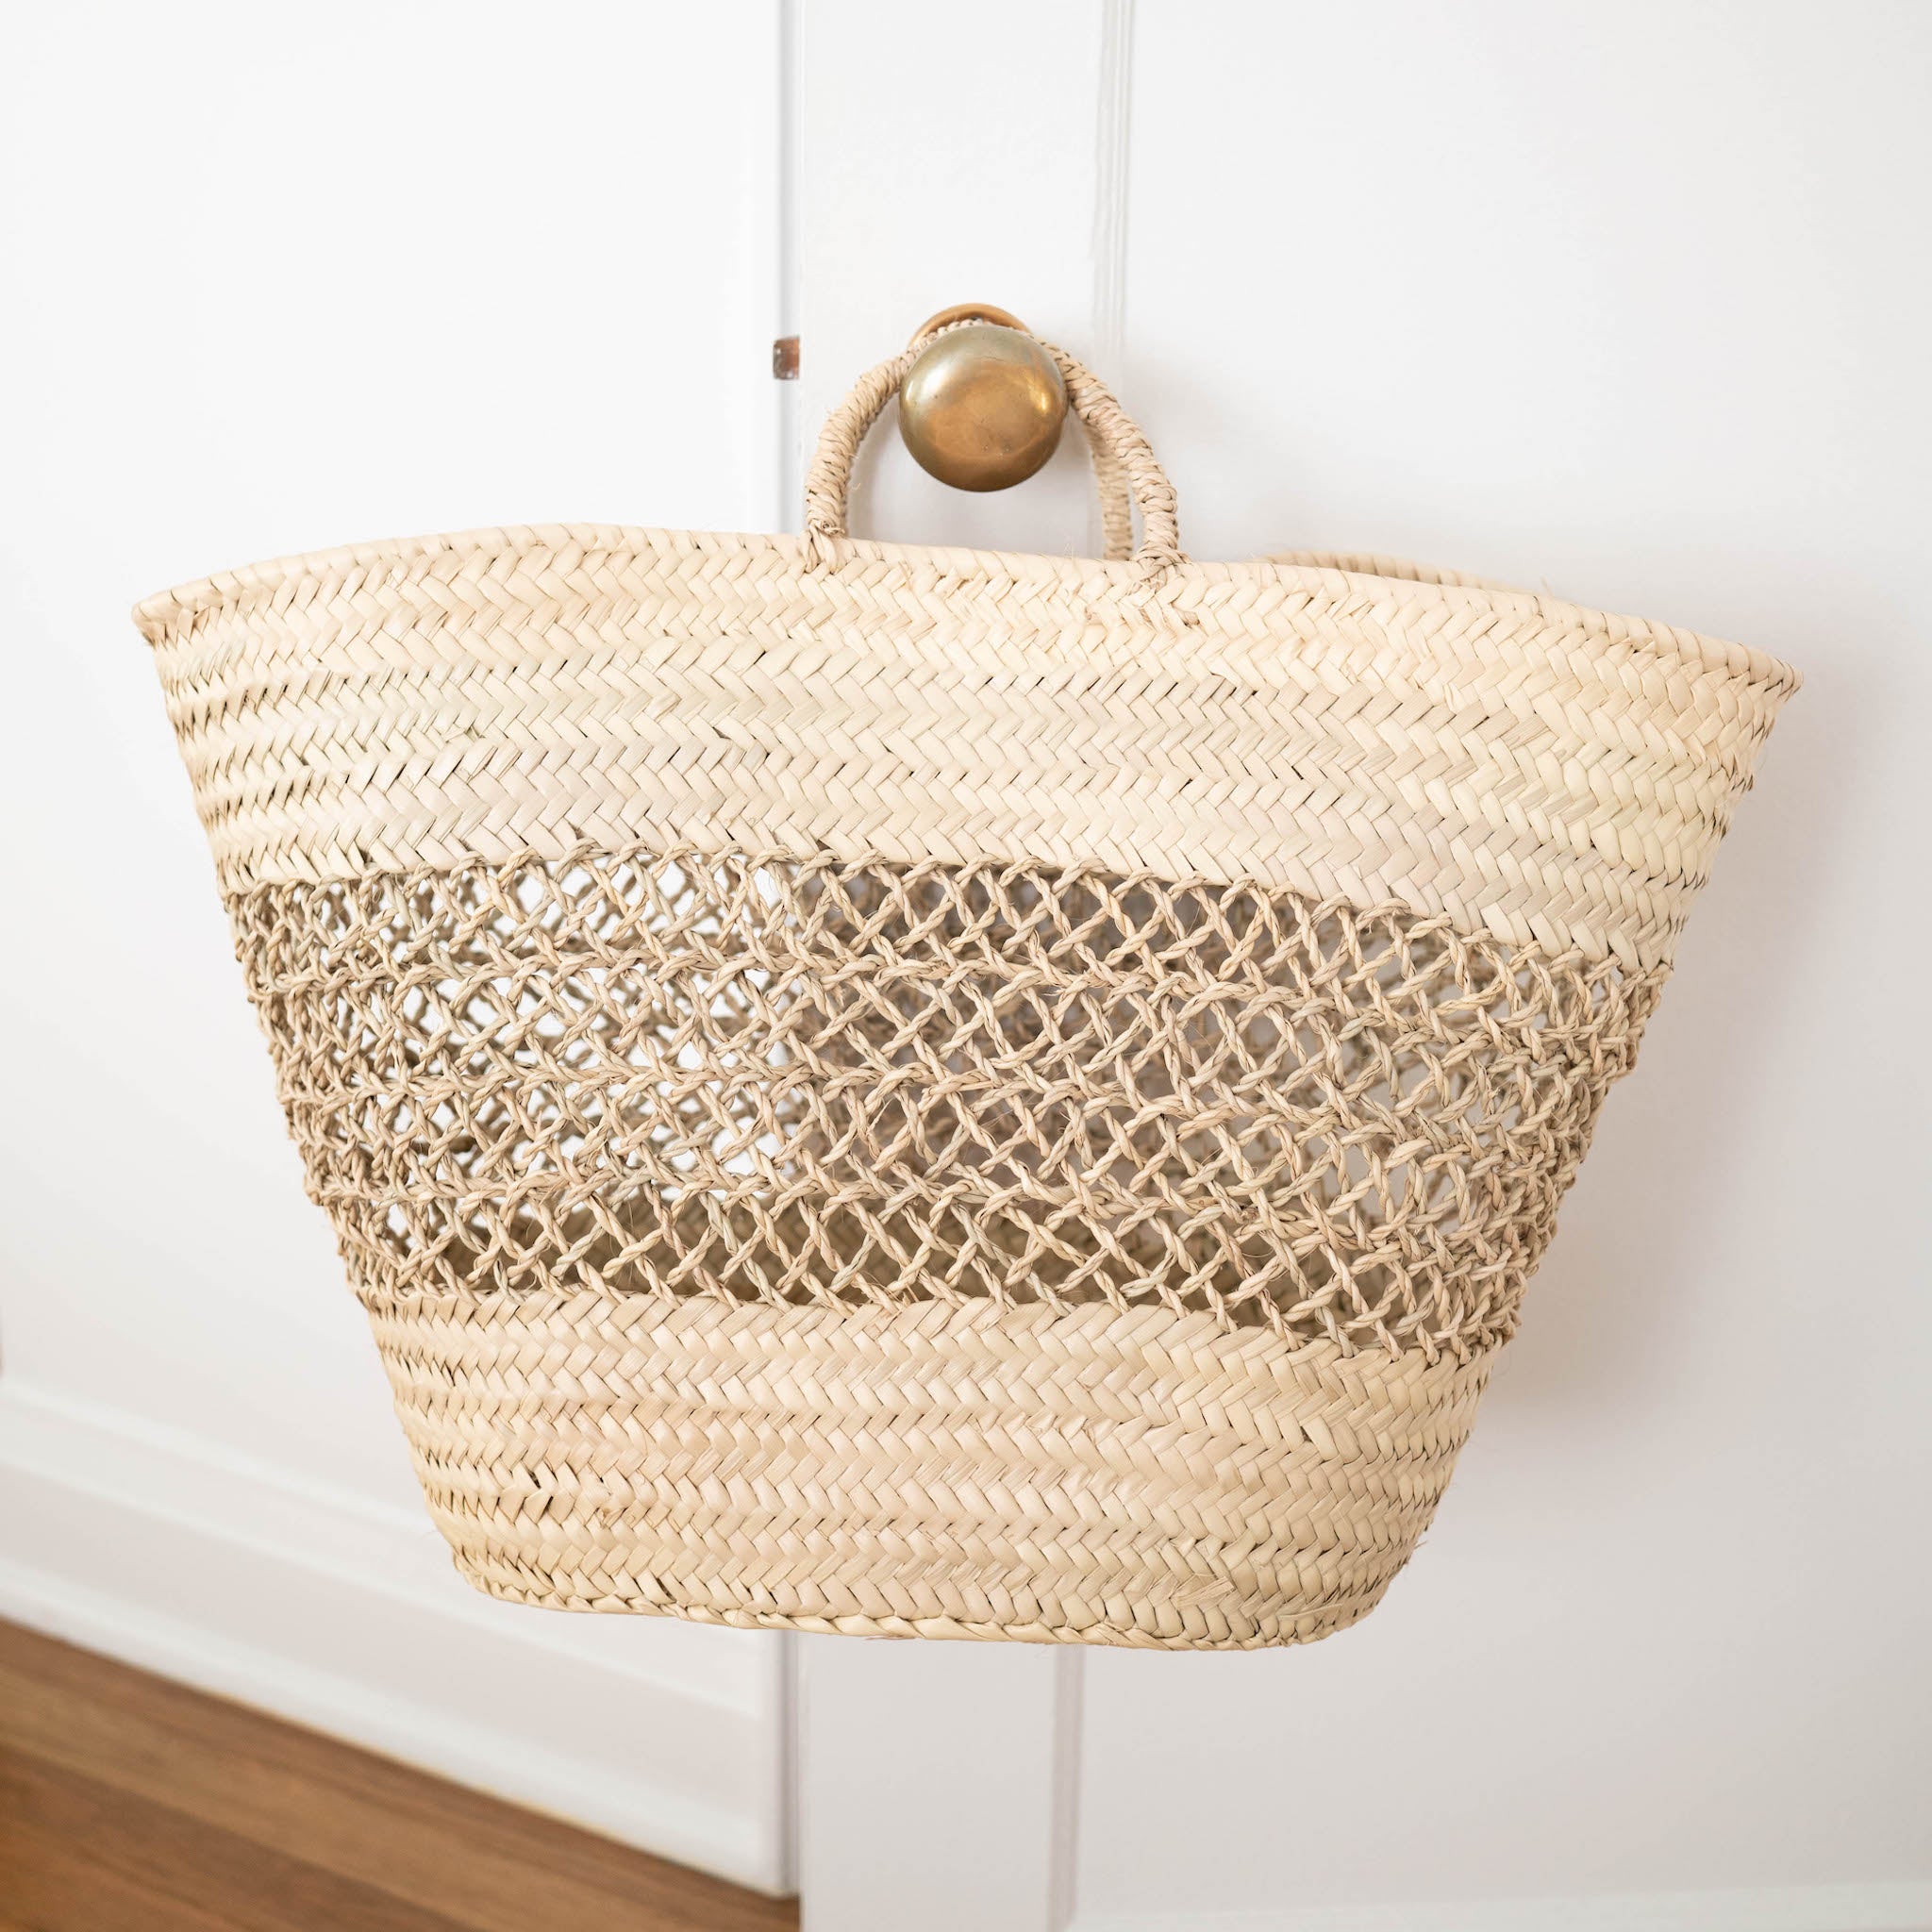 handwoven open weave market basket with handles